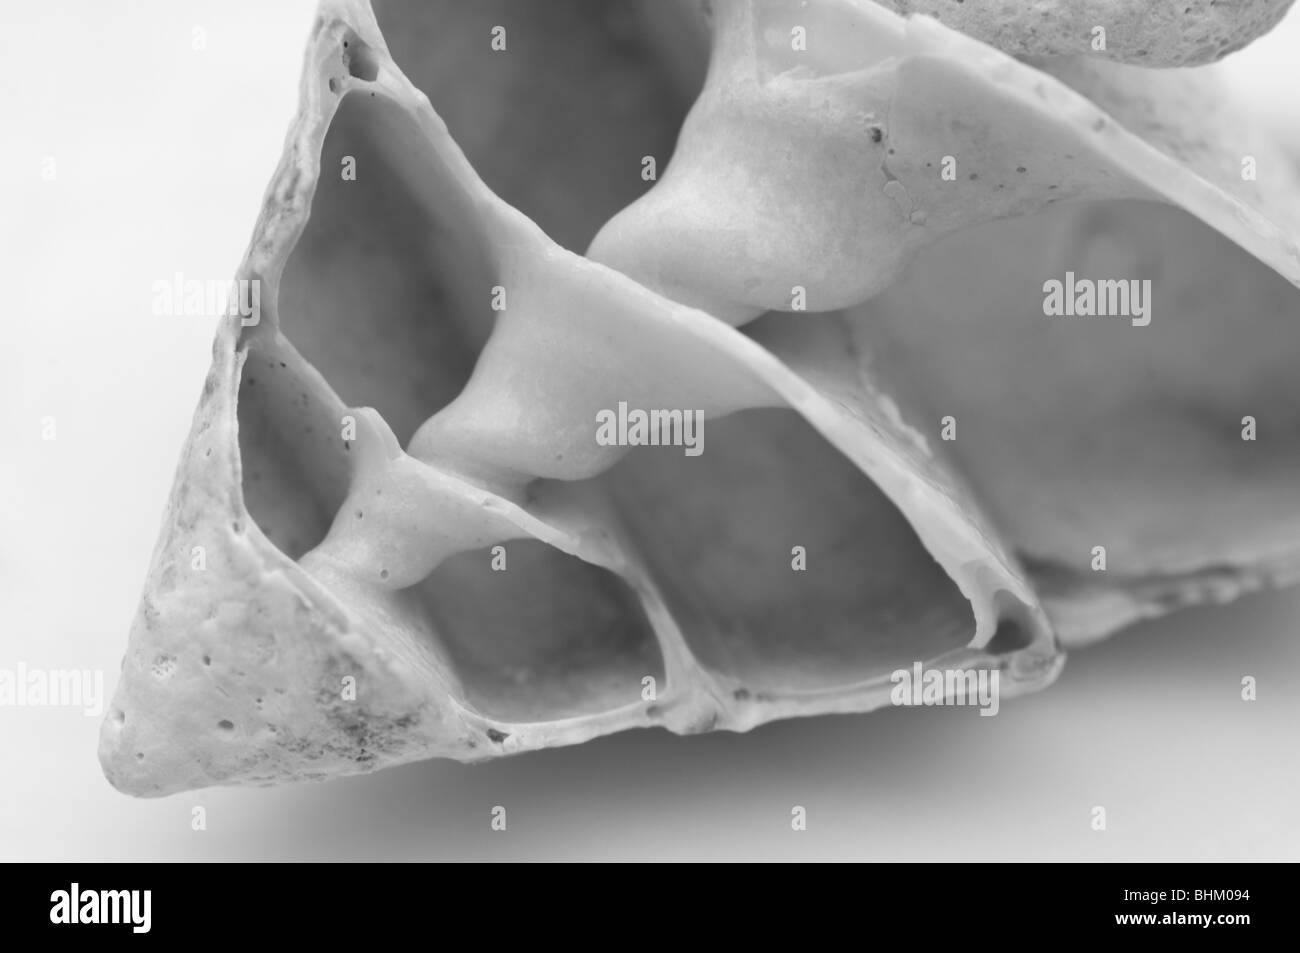 Querschnitt einer Muschel, die zur Veranschaulichung der Innenschale Struktur Stockfoto